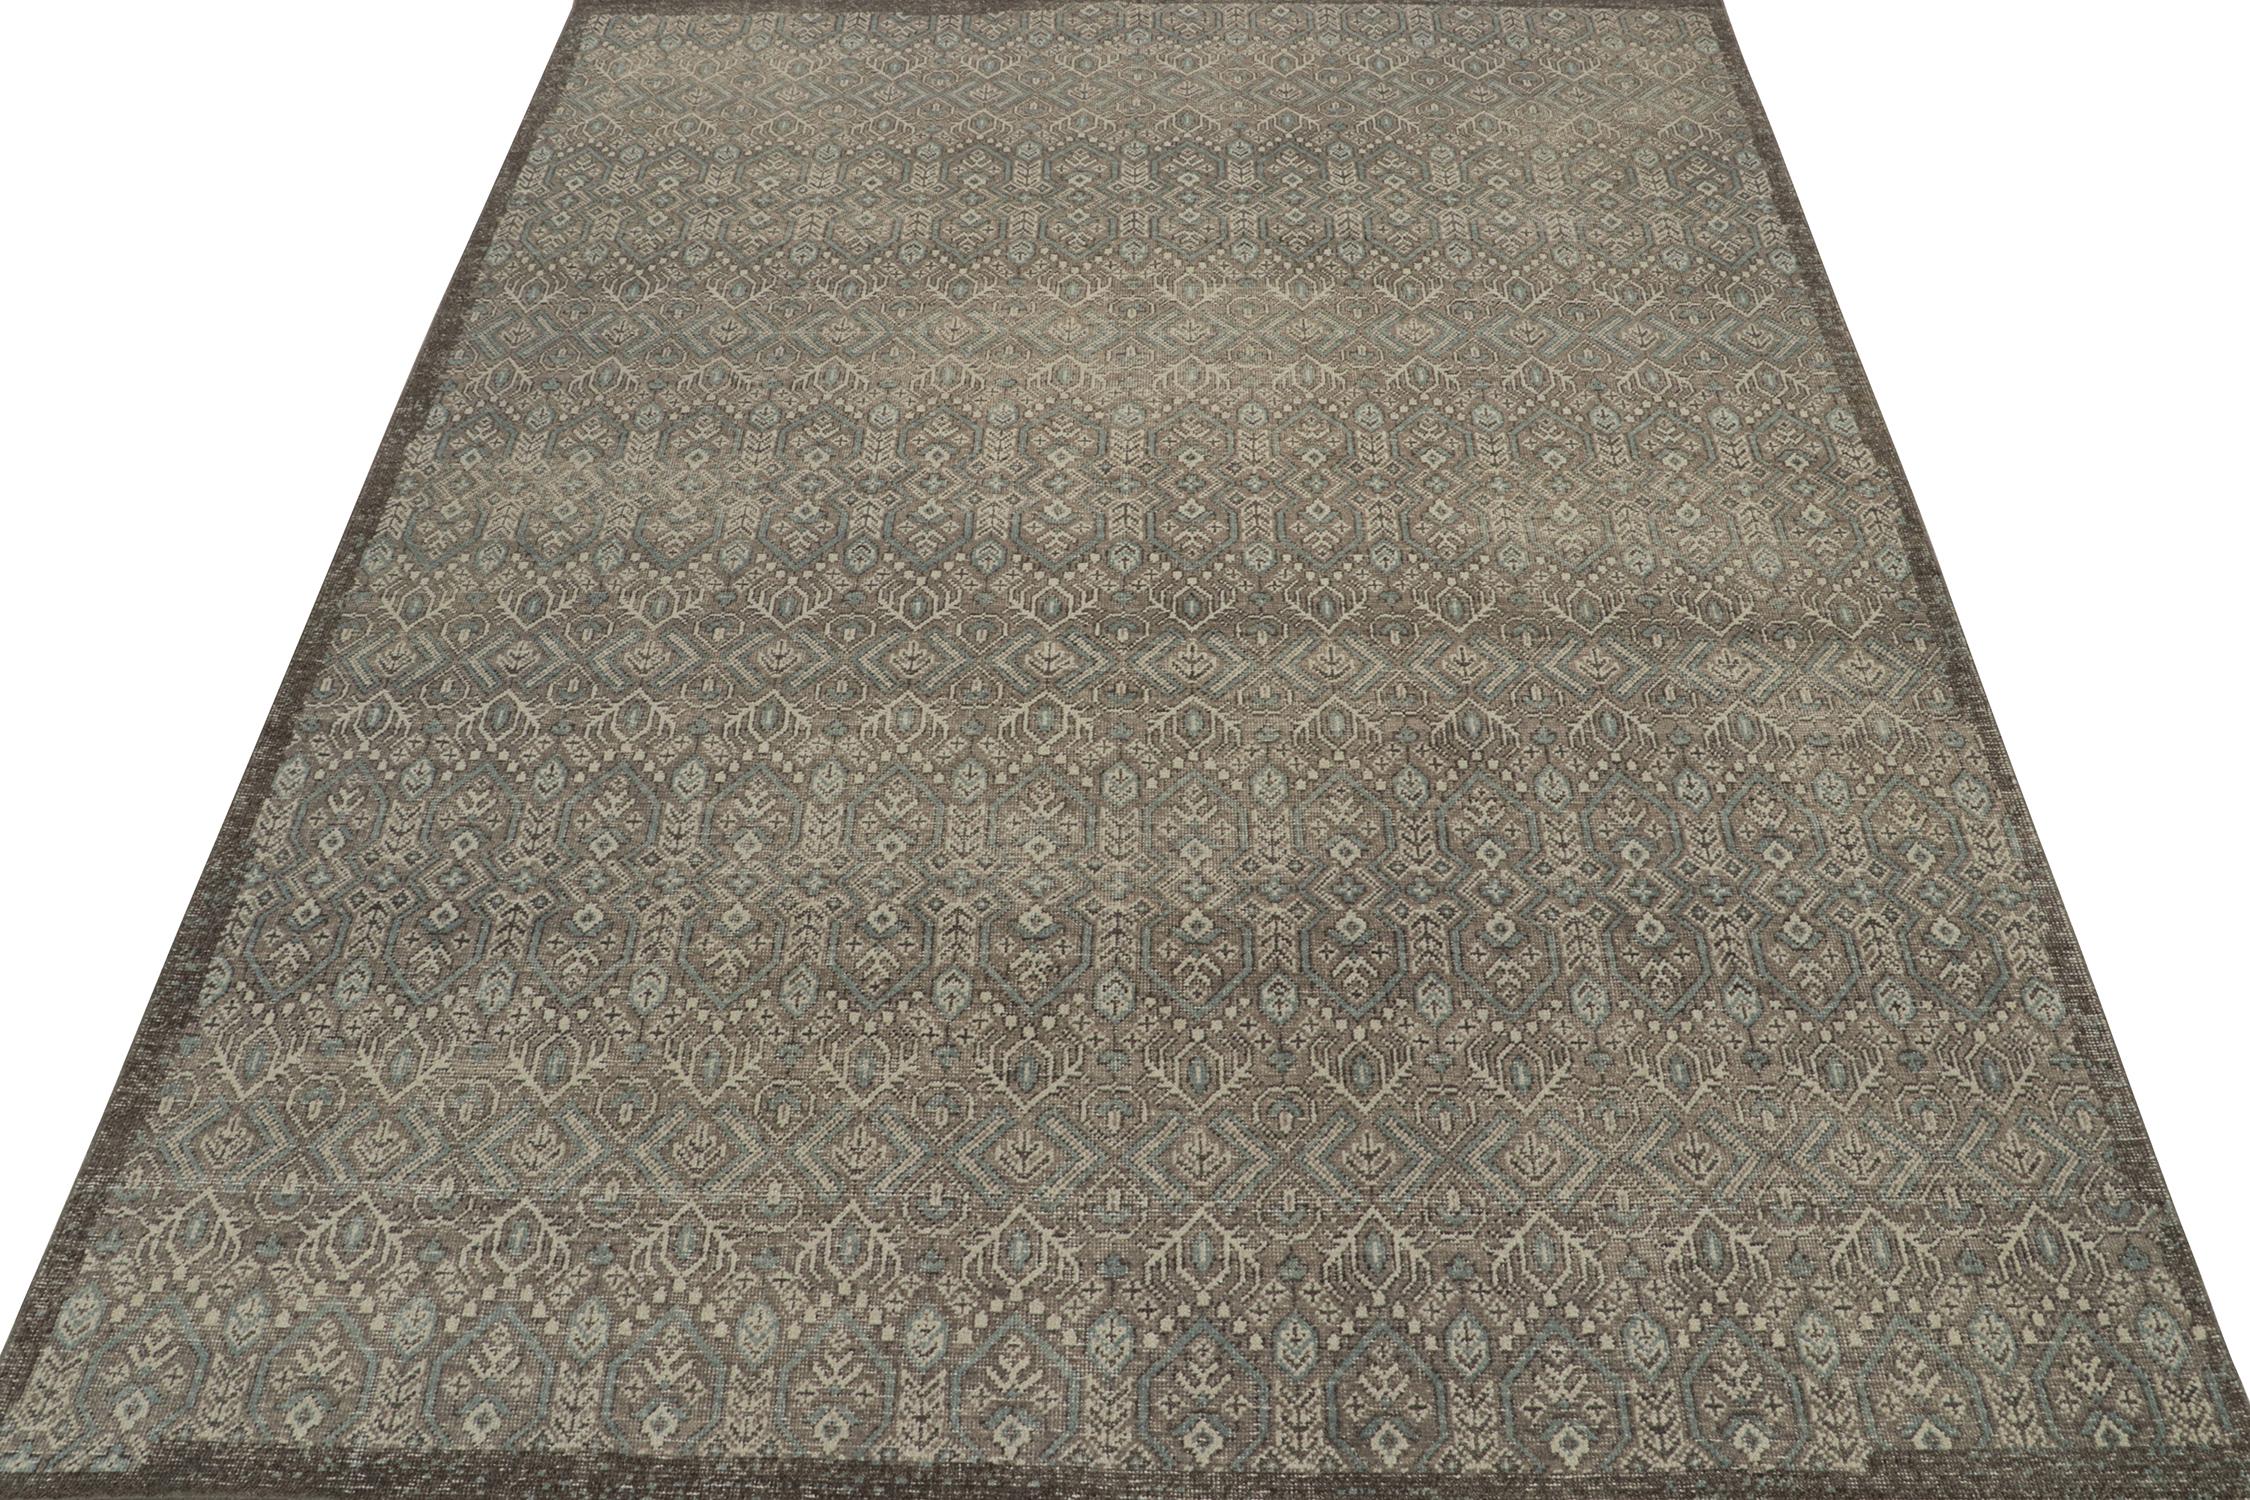 Ce tapis 9x12 est un nouvel ajout royal à la Collection Homage de Rug & Kilim. Noué à la main en laine et en coton, il reprend les styles des tapis tribaux anciens dans une nouvelle approche du design moderne rustique.

Plus loin dans le Design